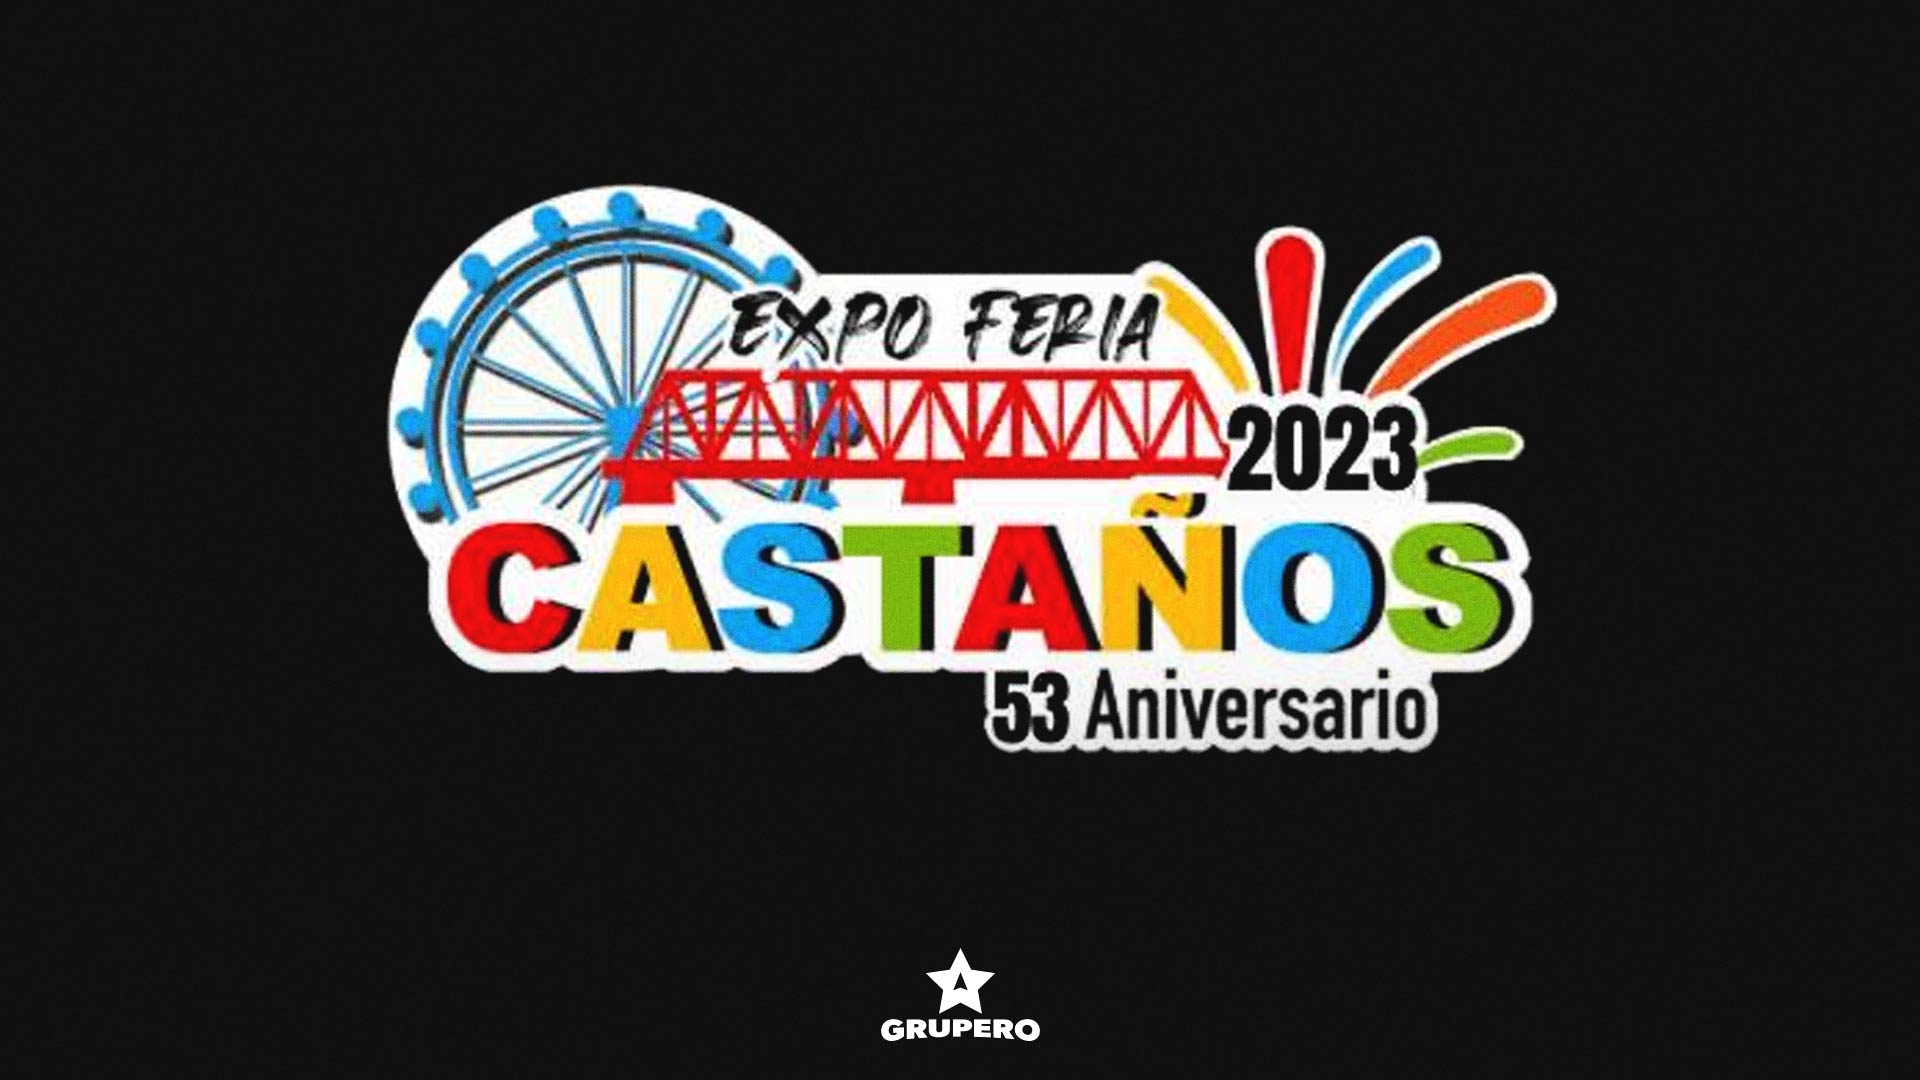 Expo Feria Regional Castaños 2023